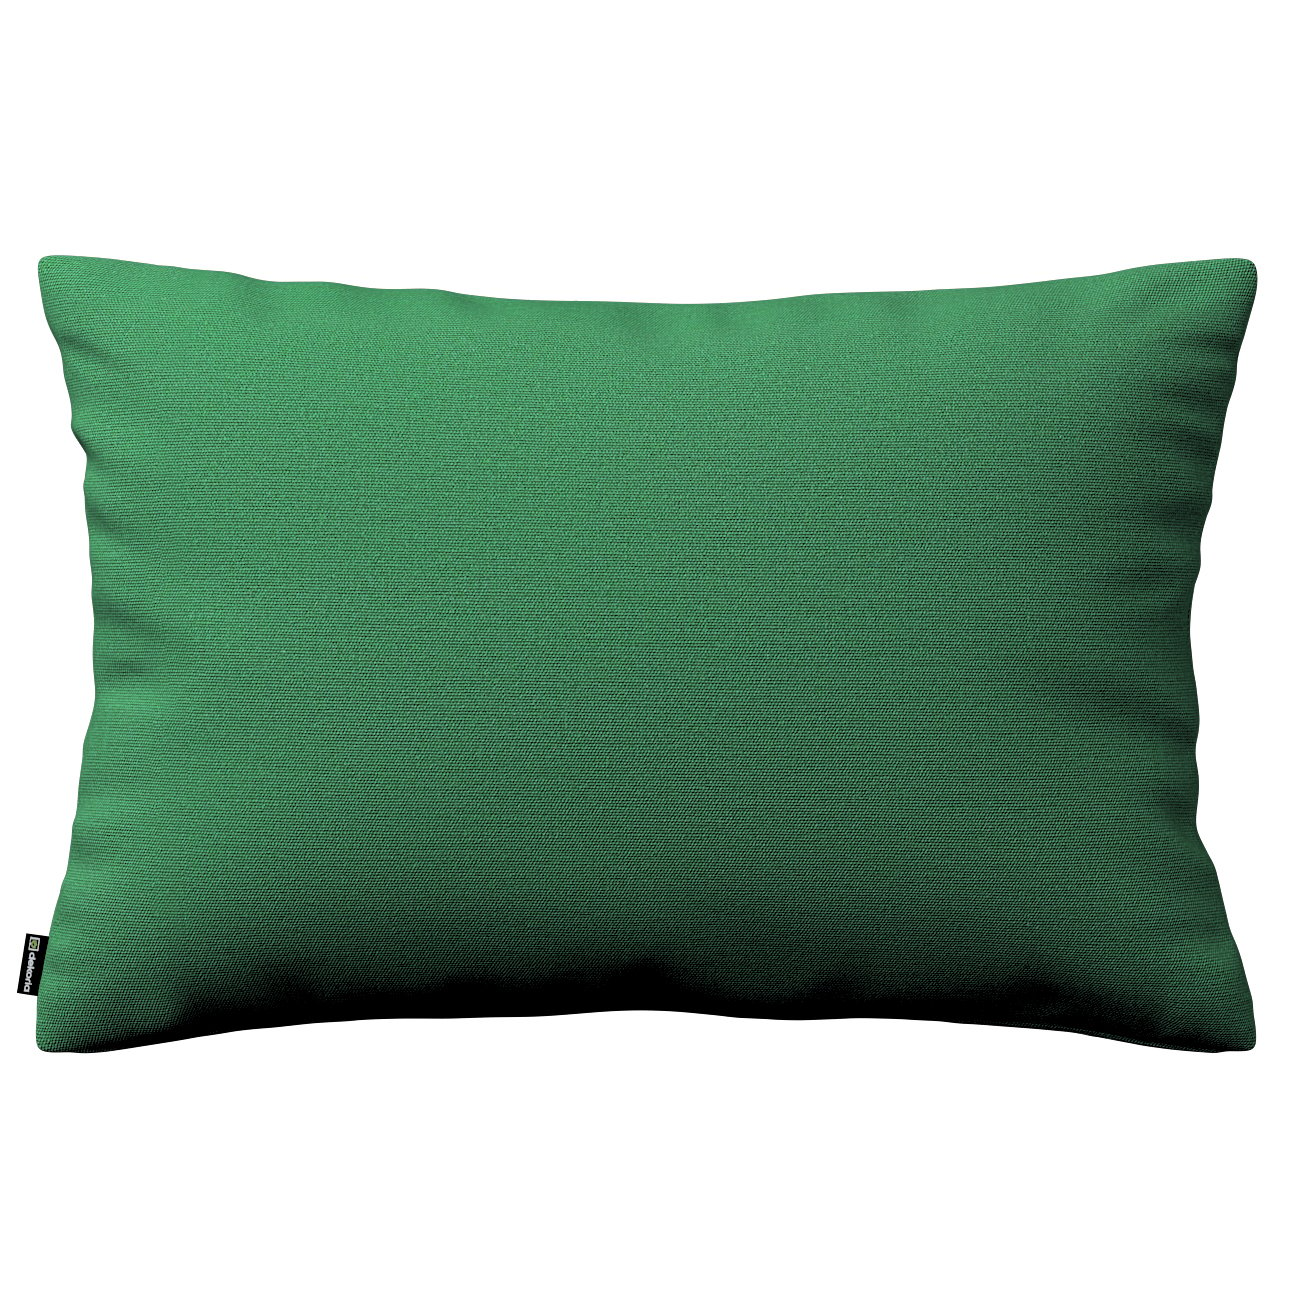 Dekoria Karin - jednoduchá obliečka, 60x40cm, fľašovo zelená, 60 x 40 cm, Loneta, 133-18